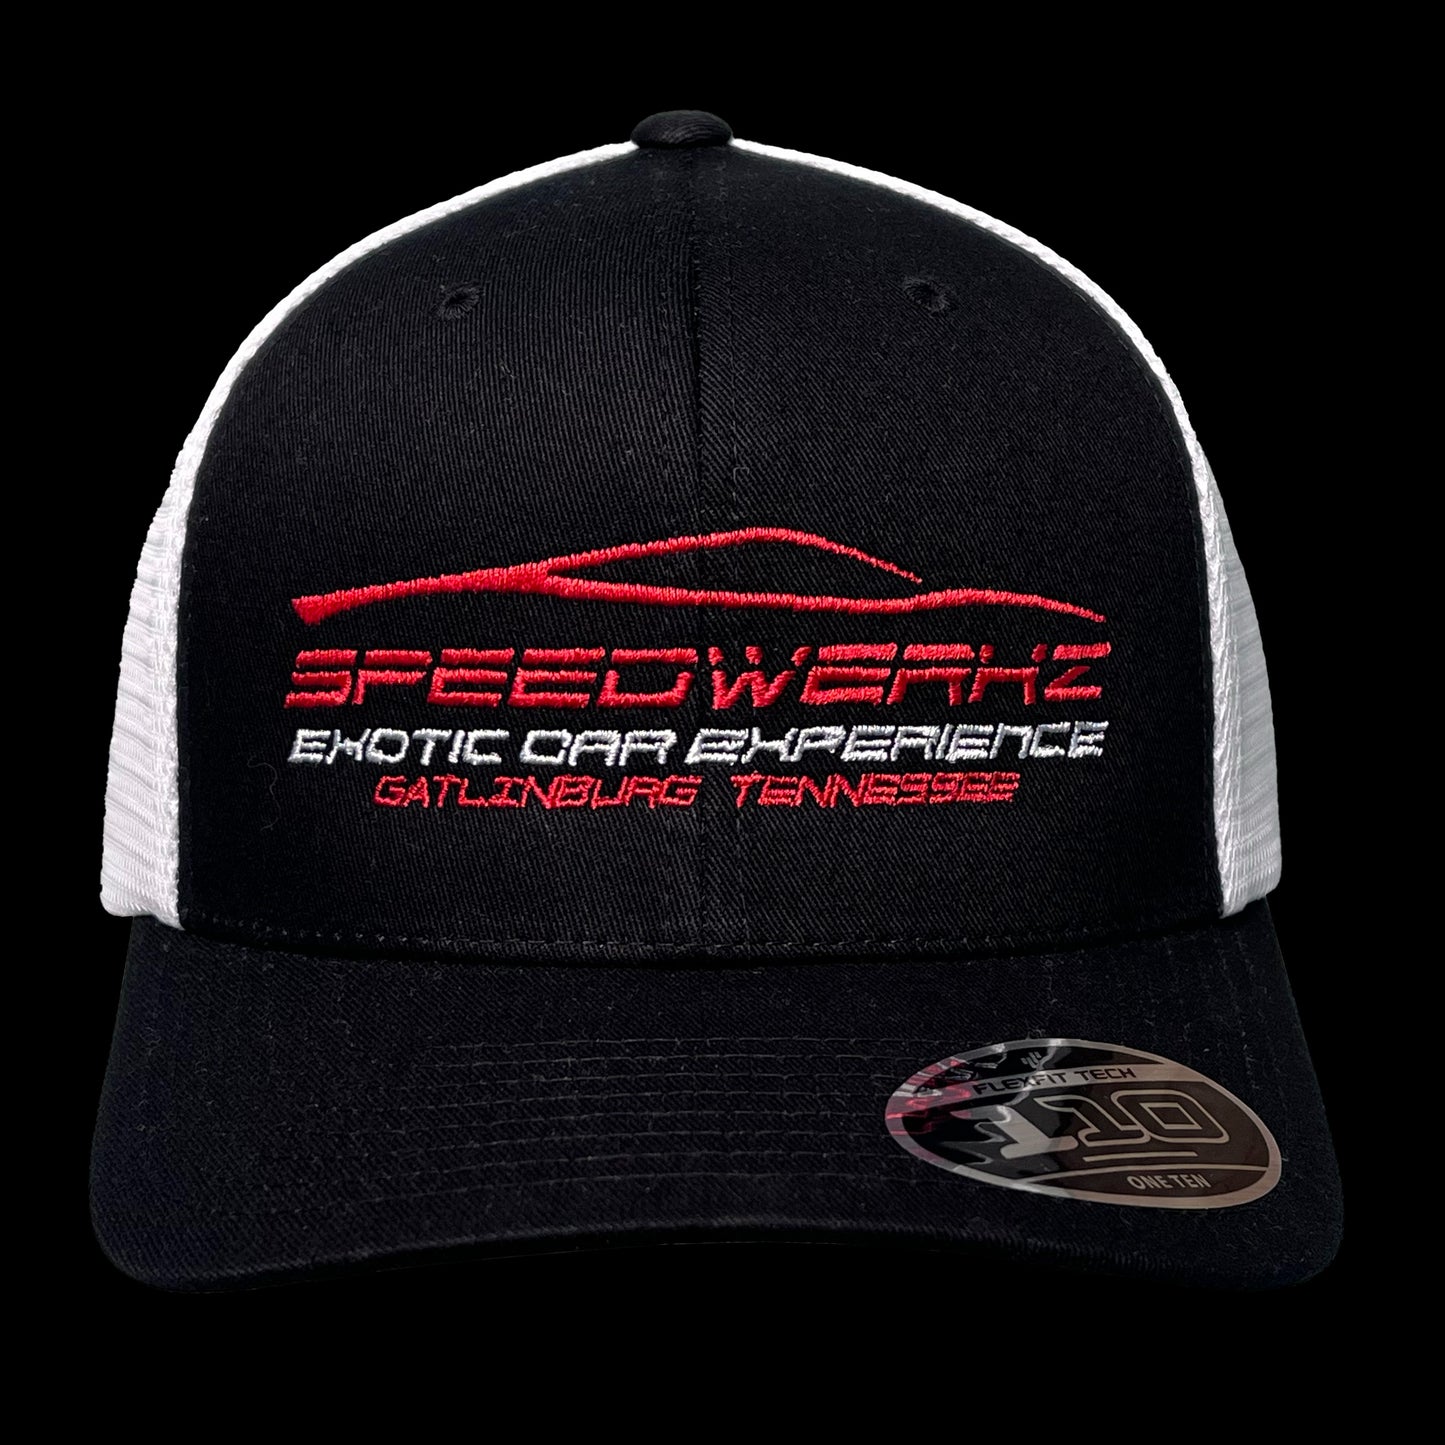 Speedwerkz Trucker Hat Black/White